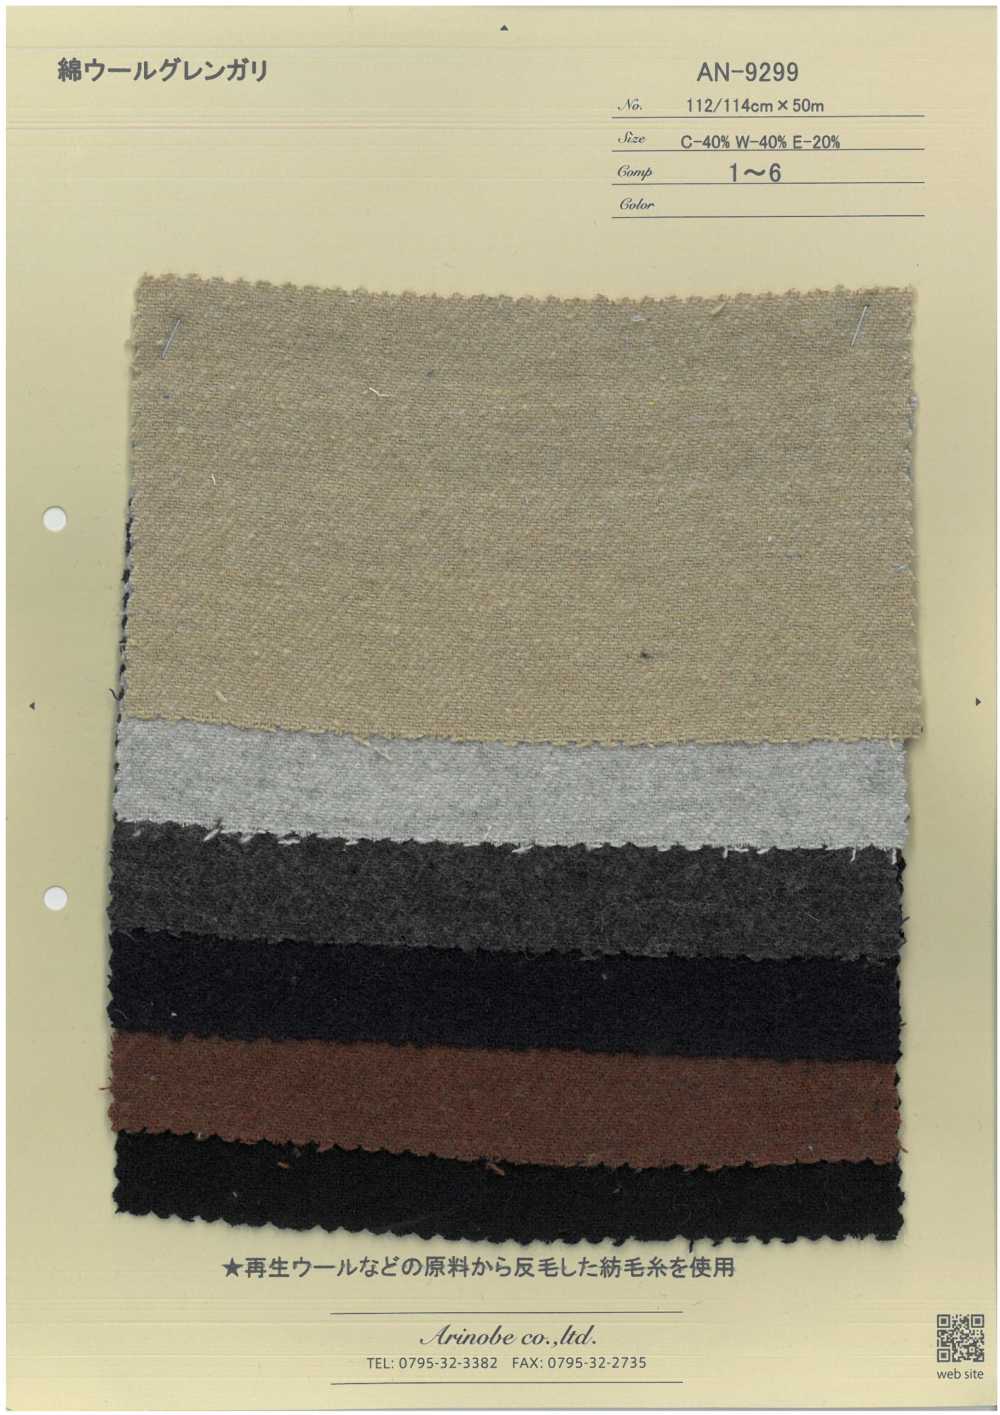 AN-9299 Glengari Aus Watte[Textilgewebe] ARINOBE CO., LTD.